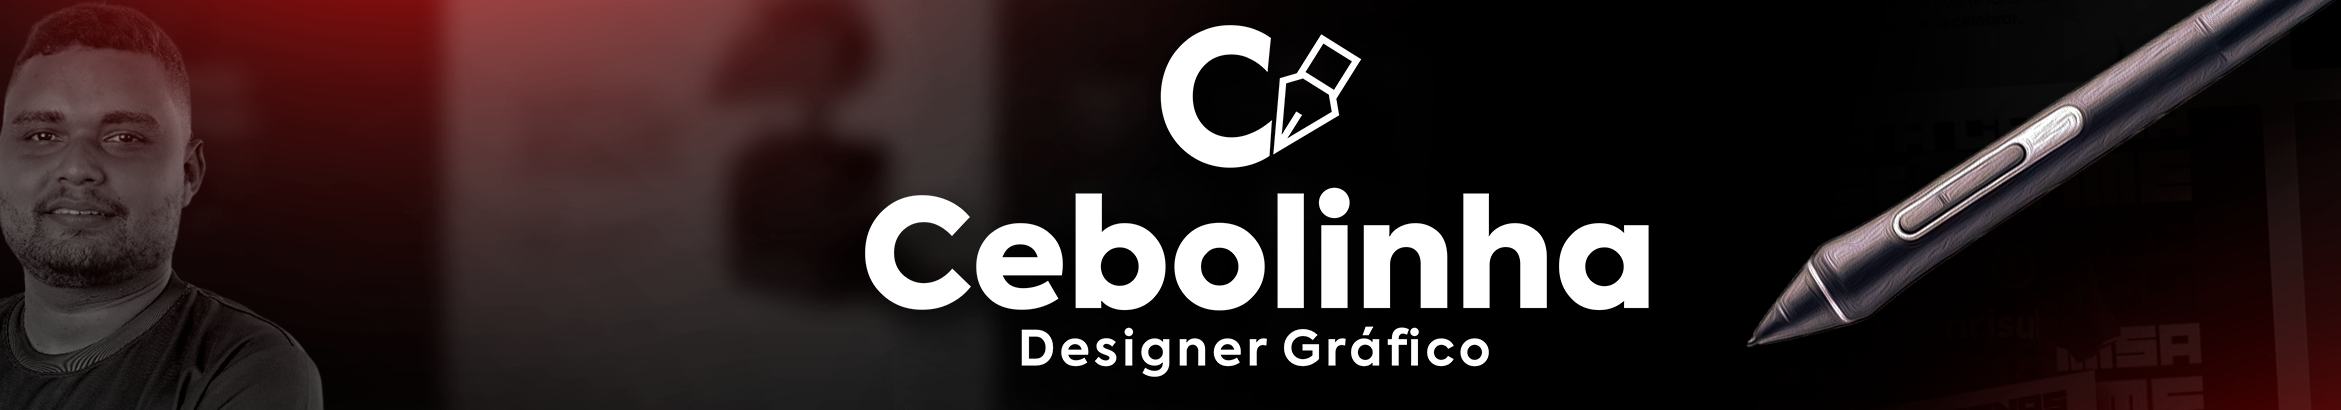 Banner de perfil de Cebolinha Designer